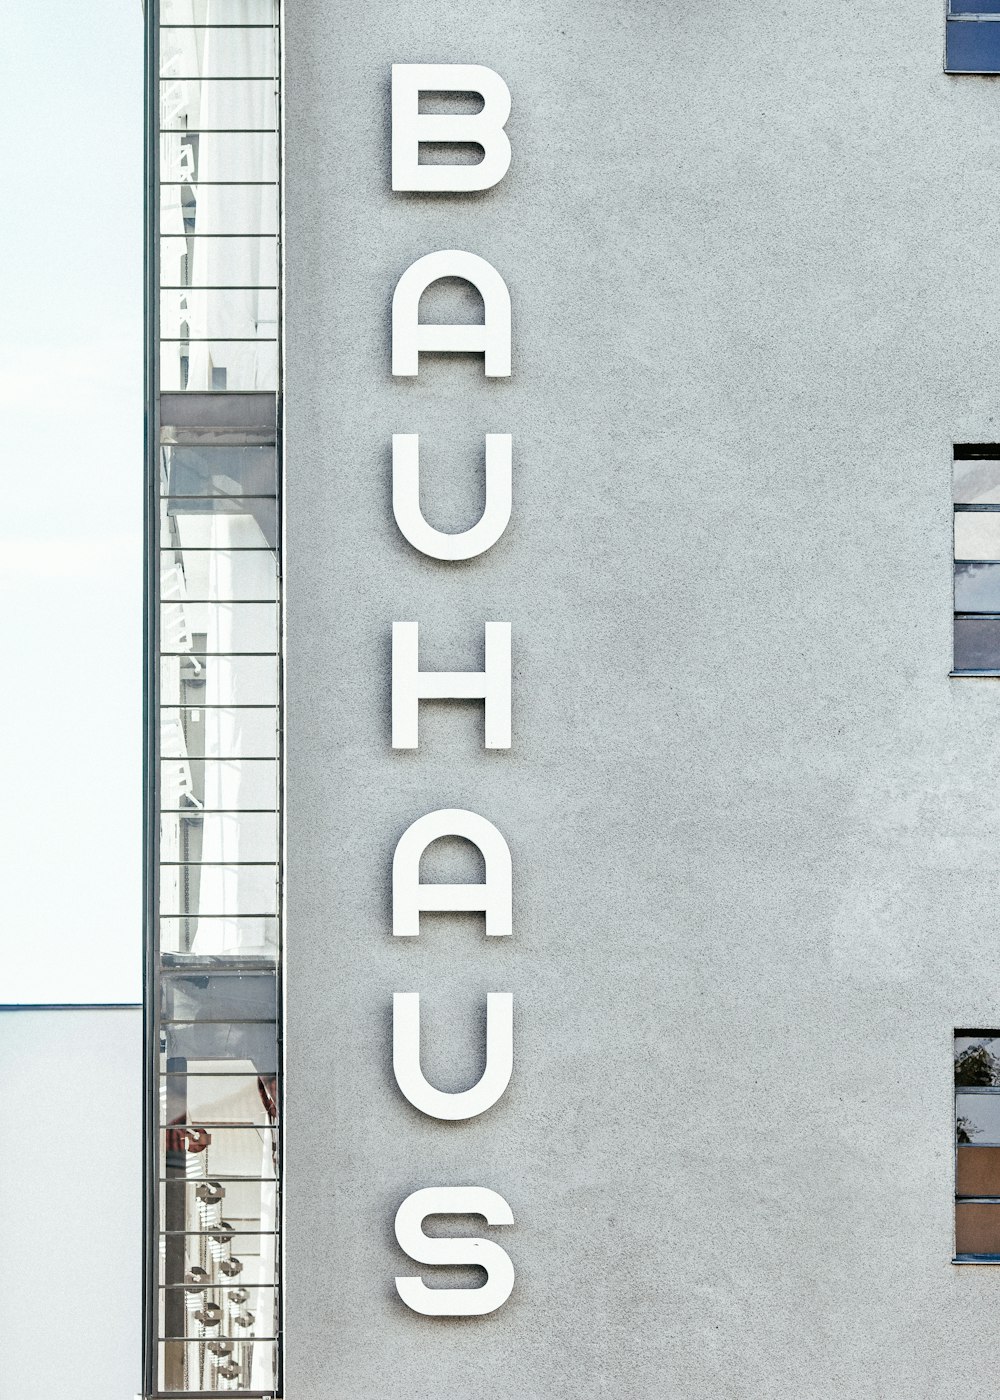 Immeuble d’habitation en béton Bauhaus